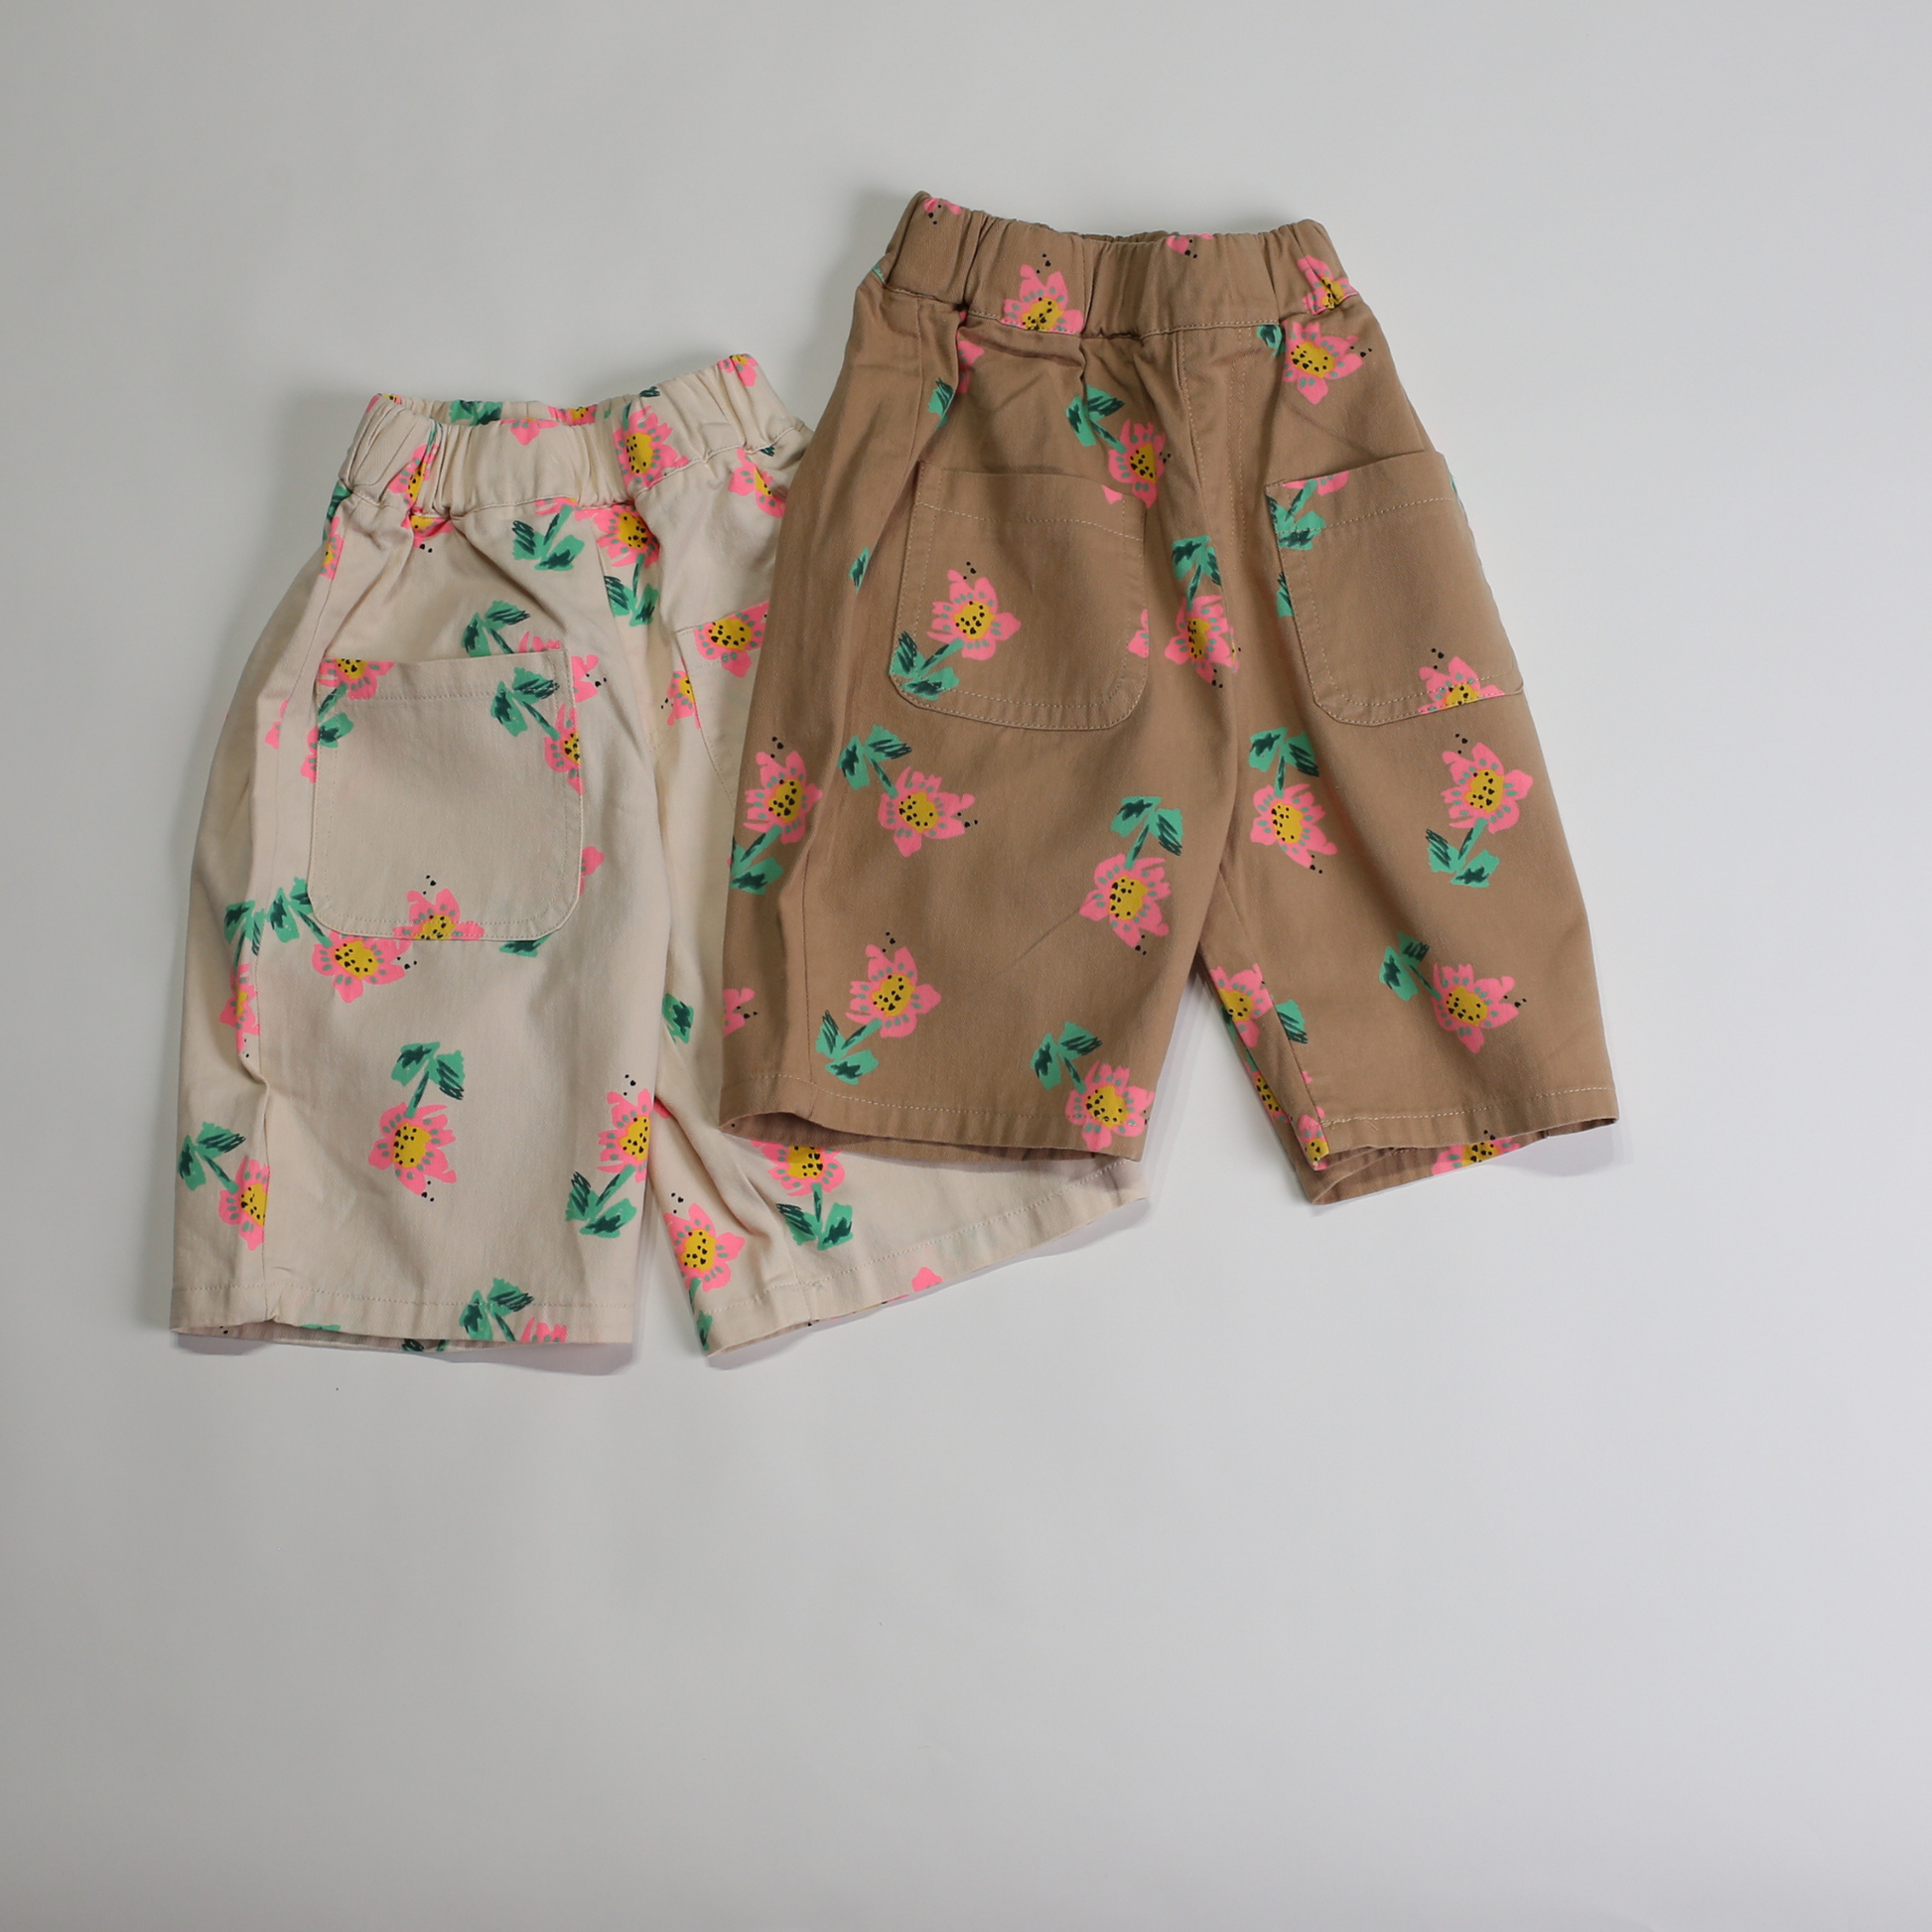 フラワー ポケット パンツ / flower pocket pants (こども服) - kids clothes shop GUZUGUZU